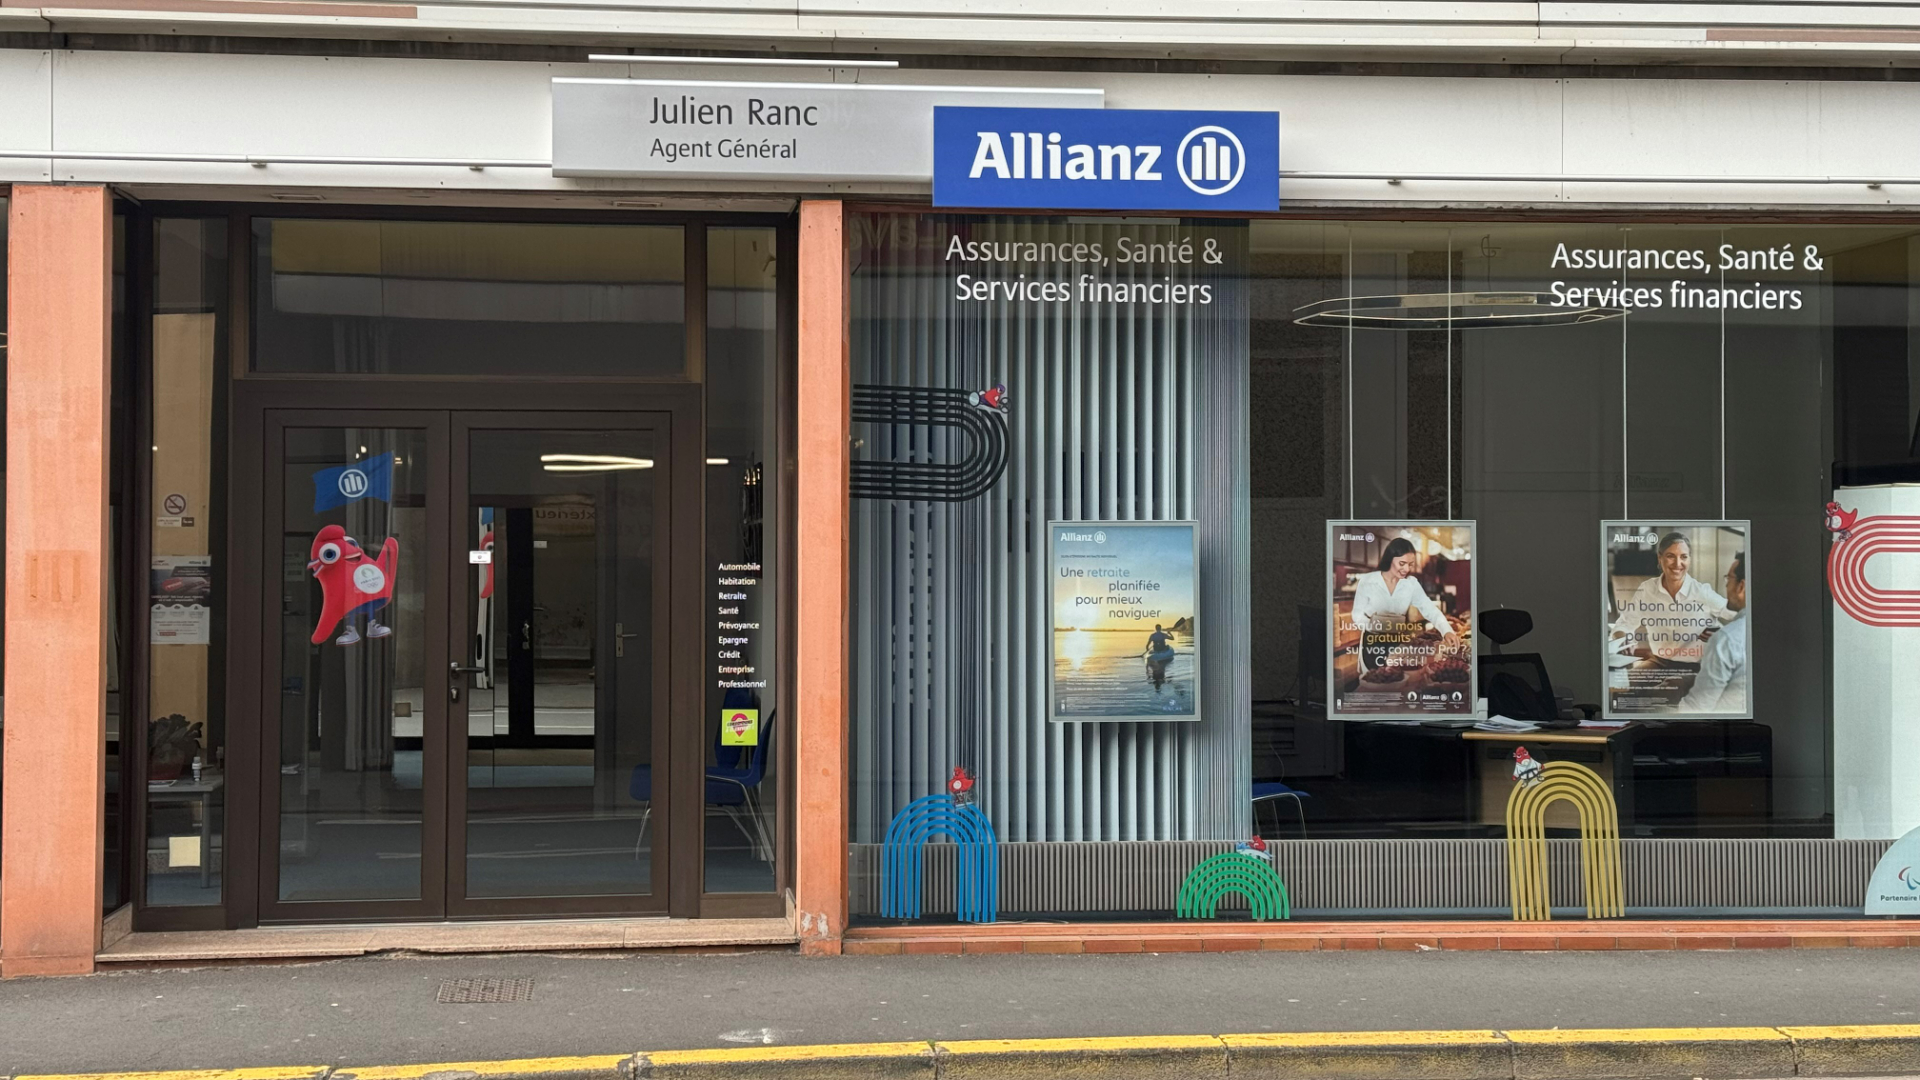 Allianz CLERMONT FERRAND CENTRE - Julien RANC